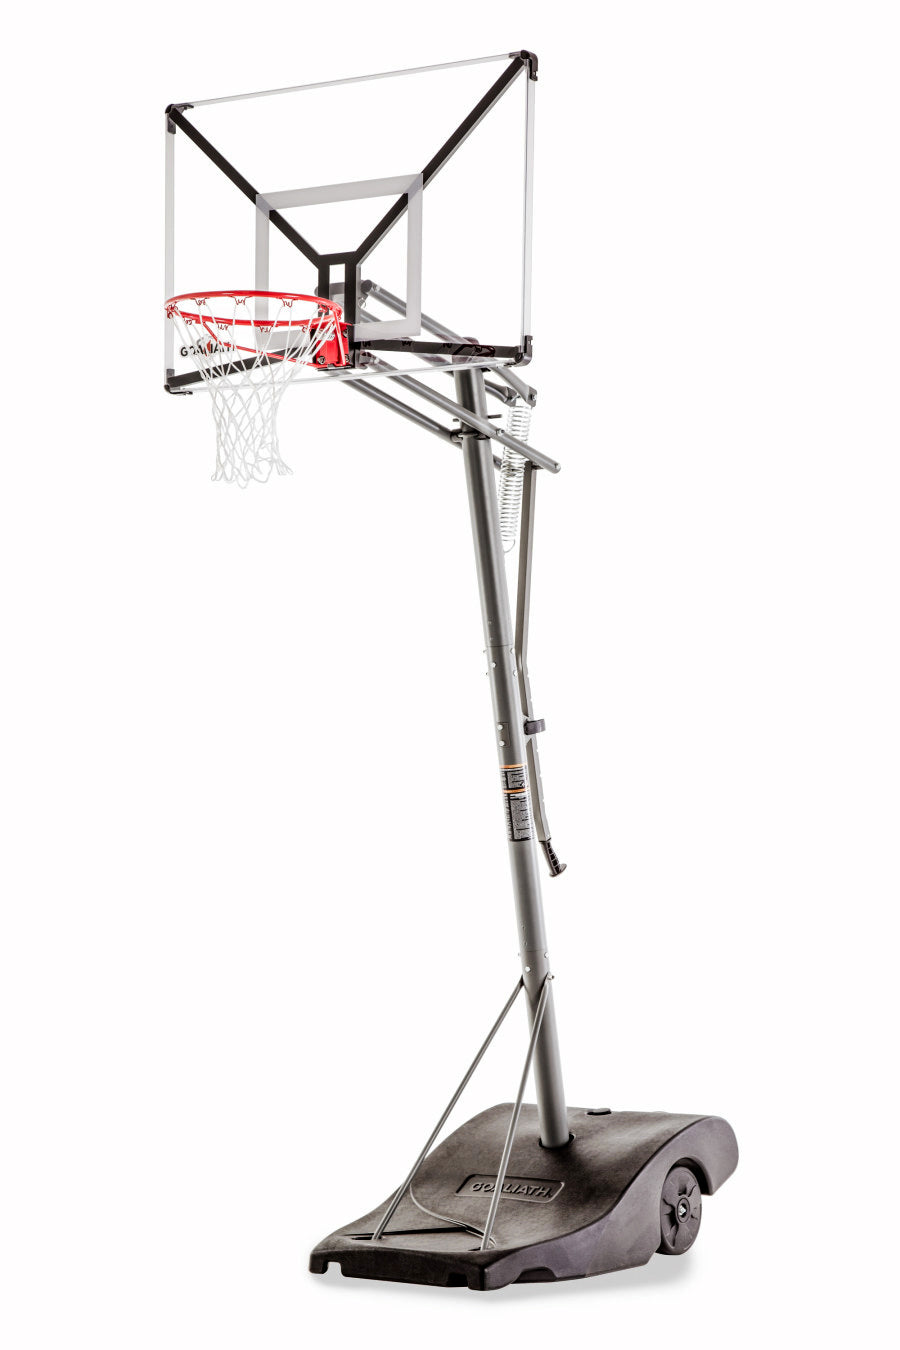 Goaliath GO TEK 50 basketball mobile hoop